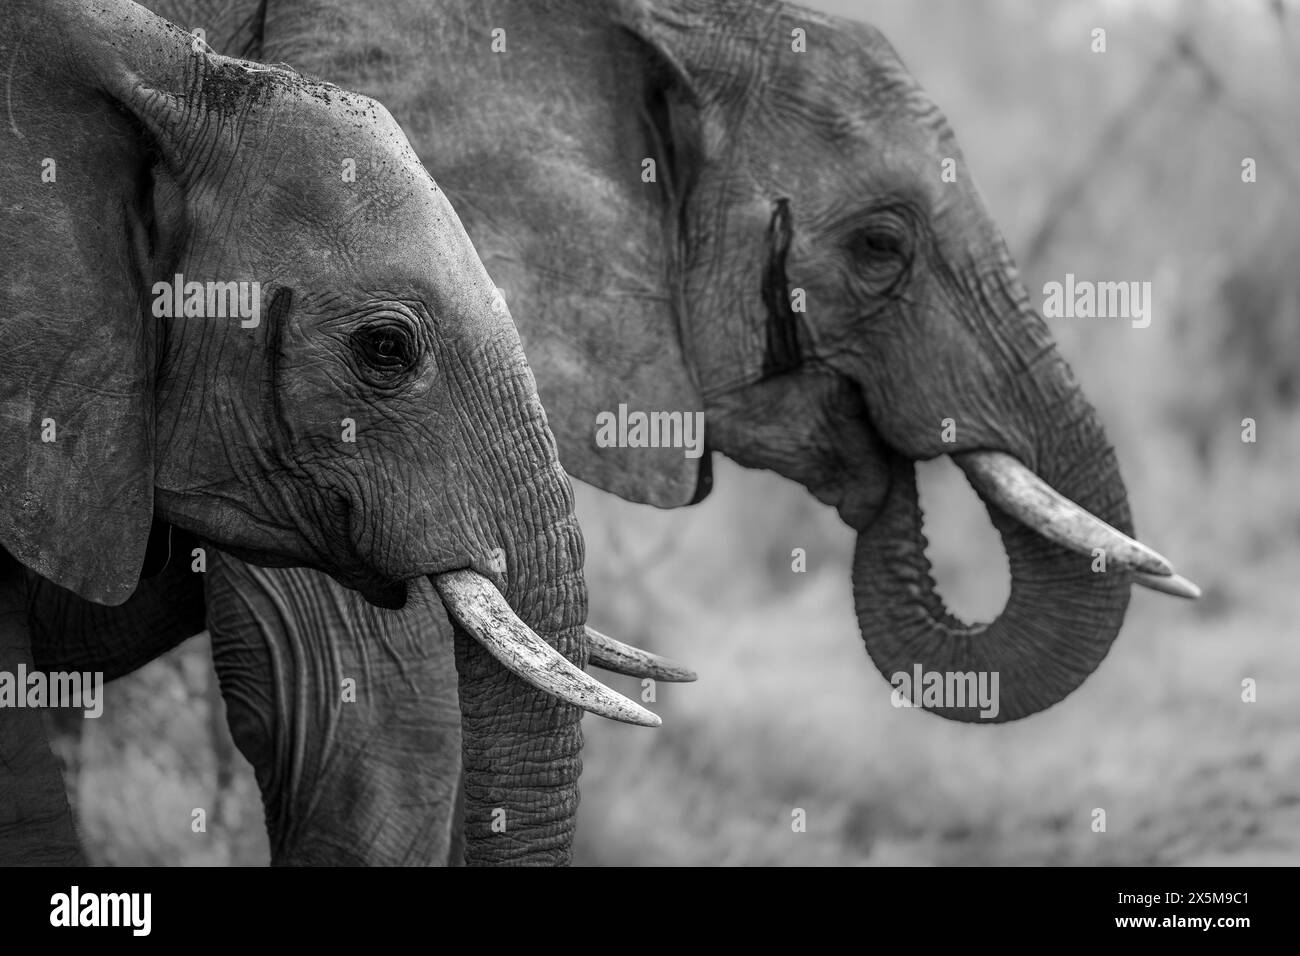 Deux éléphants, Loxodonta africana, buvant, en noir et blanc. Banque D'Images